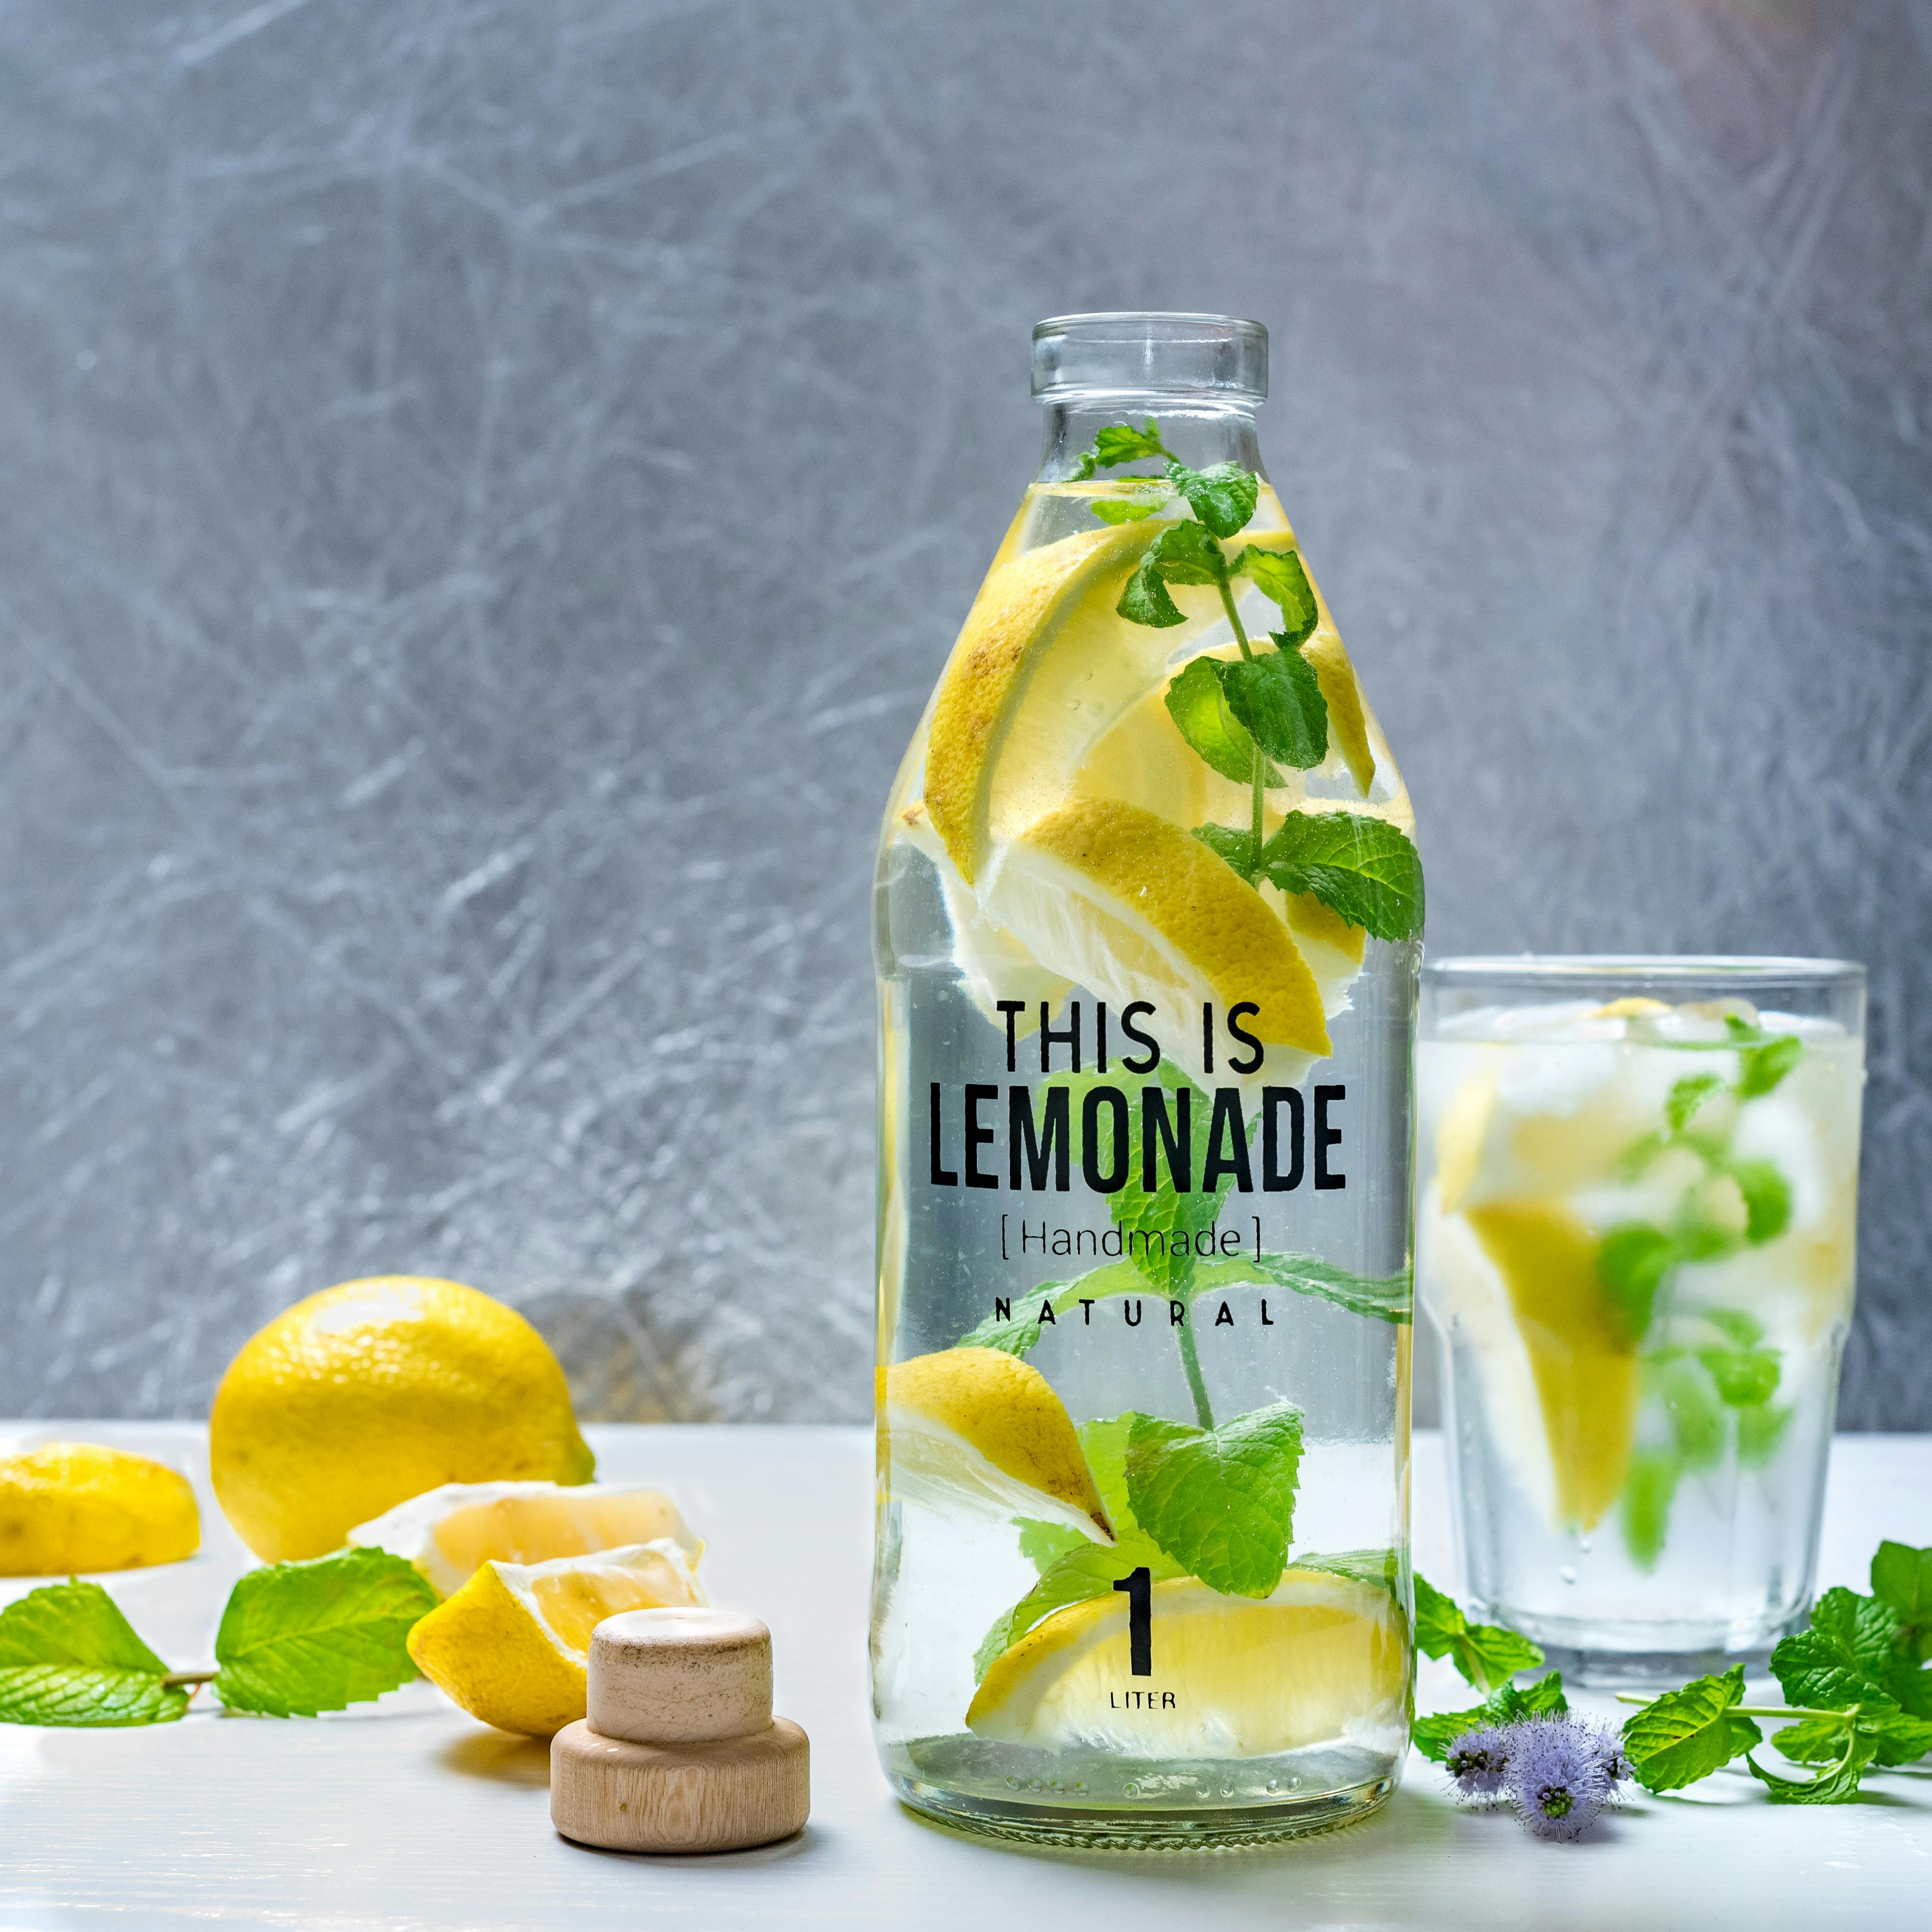 Download HD Lemonade Wallpaper  Lemonade Transparent PNG Image   NicePNGcom